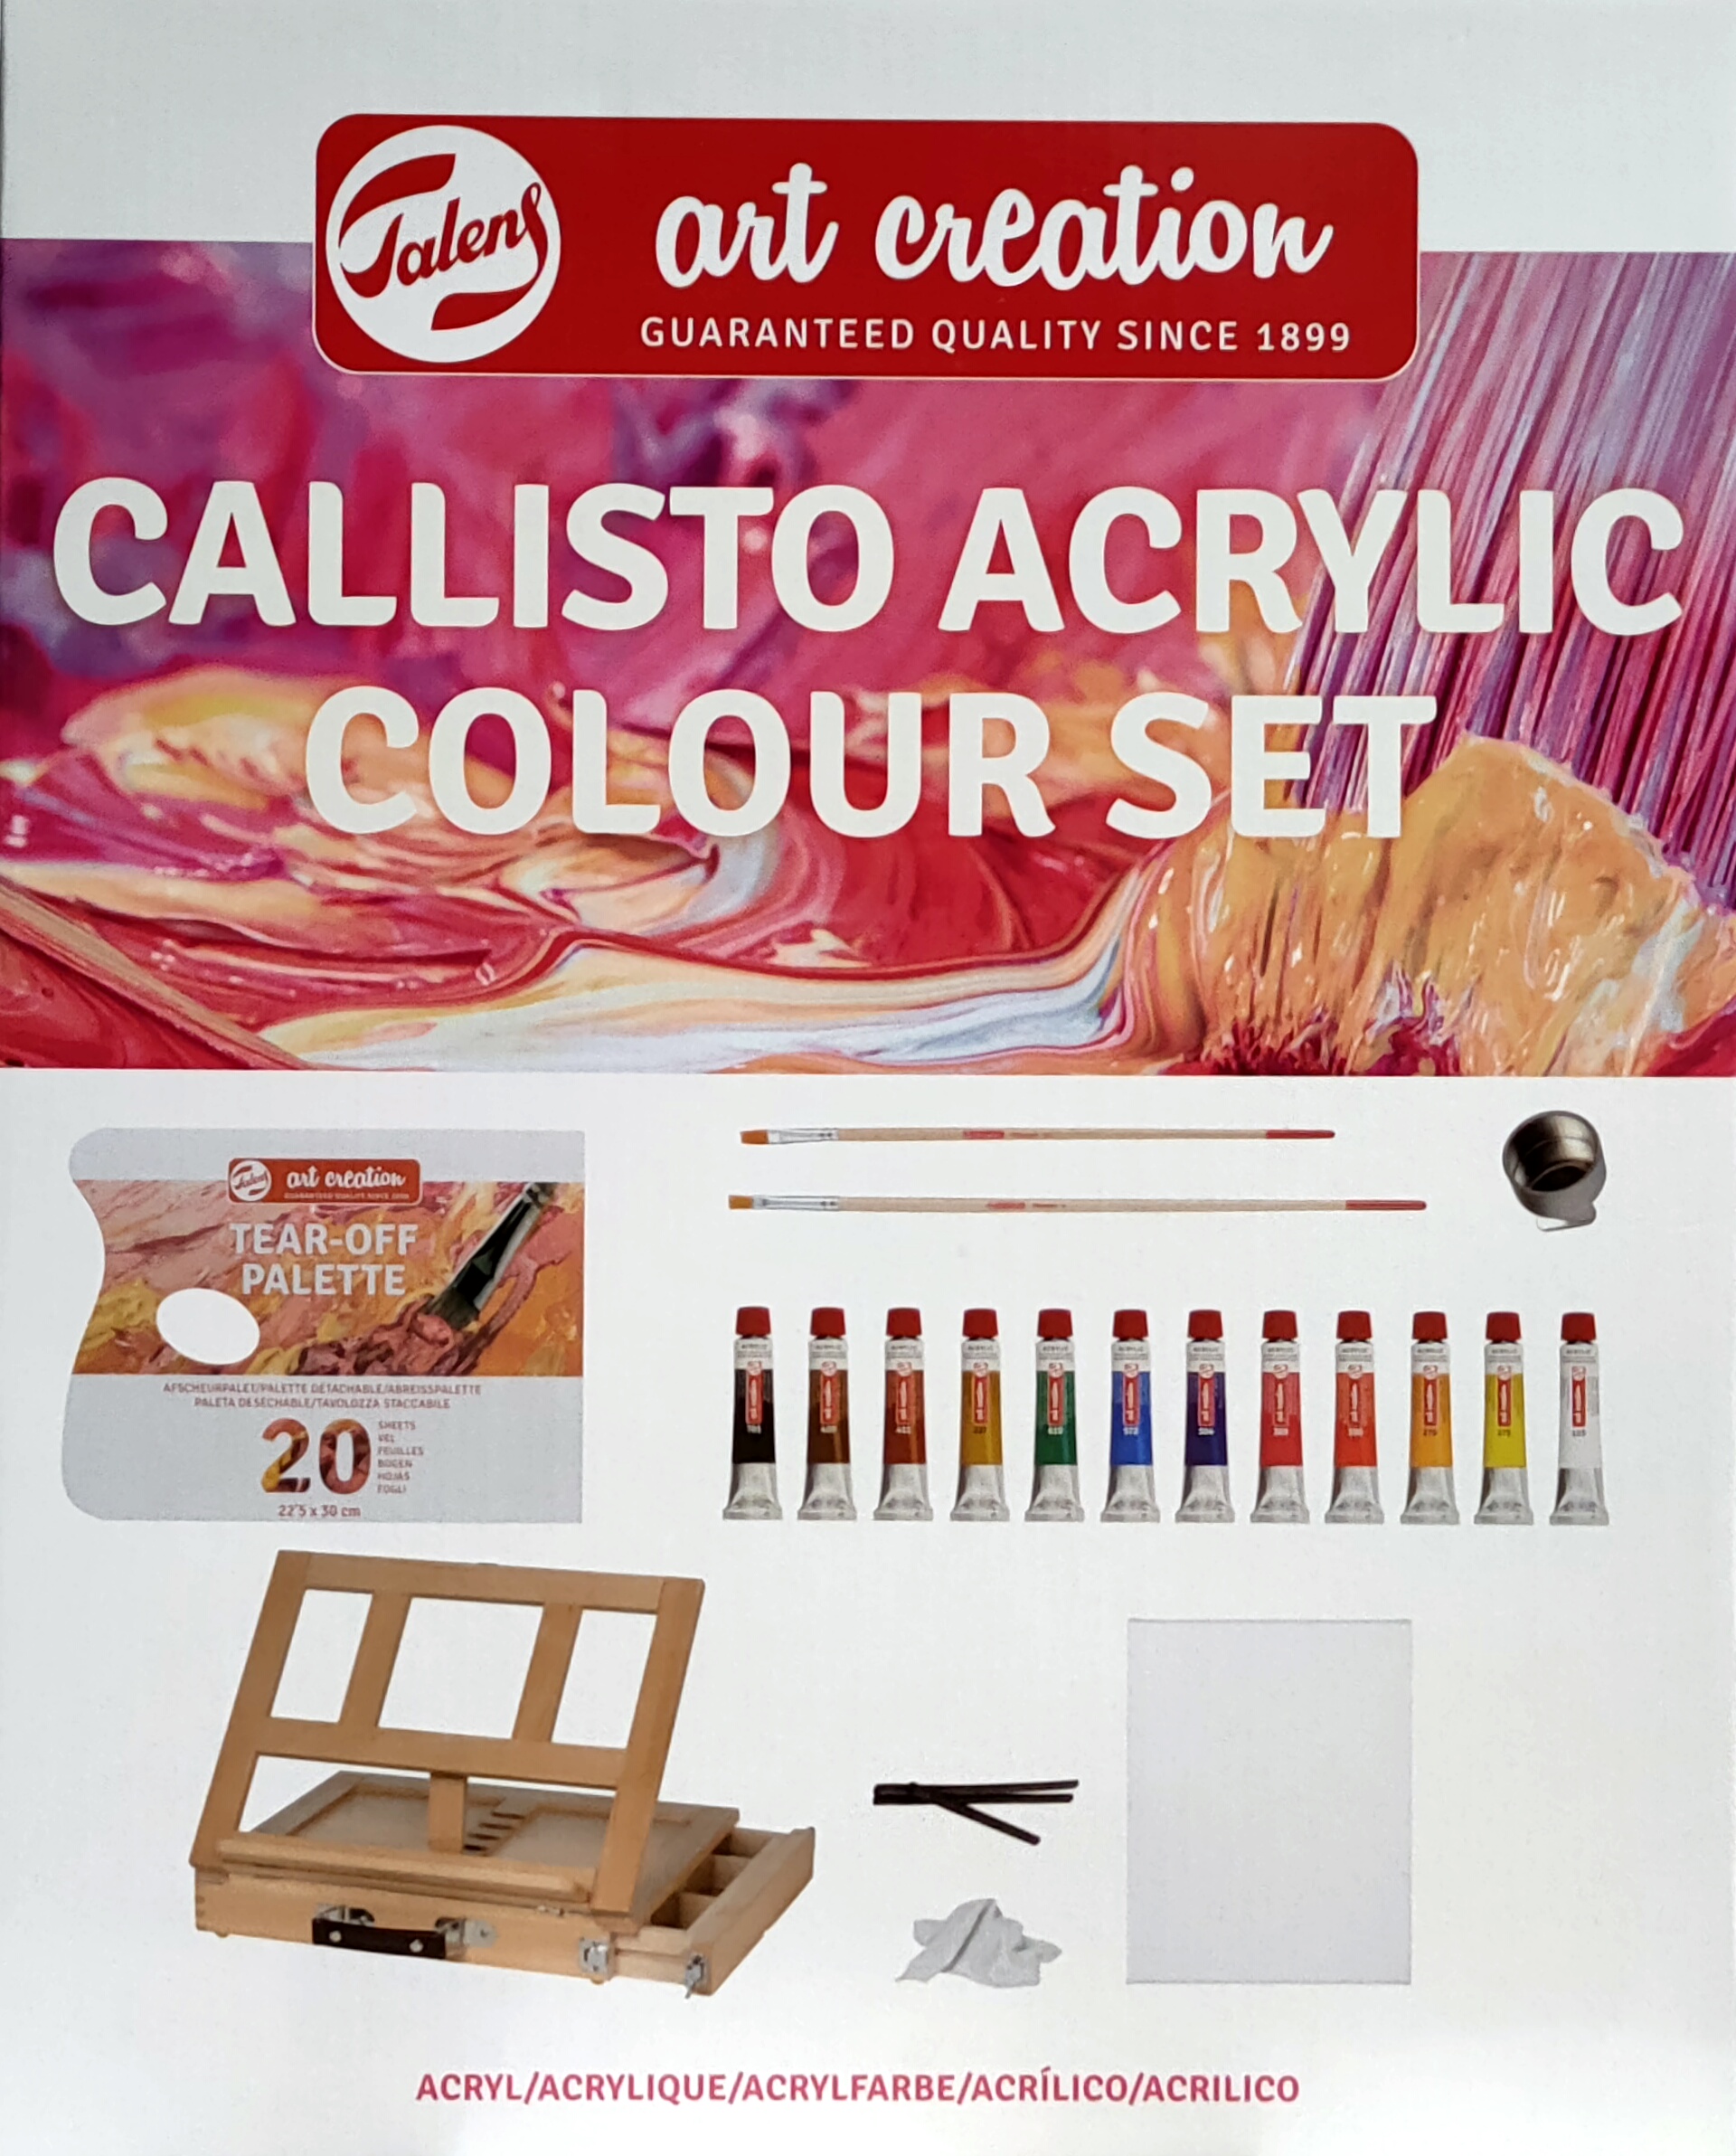 Callisto Acrylic Colour Set